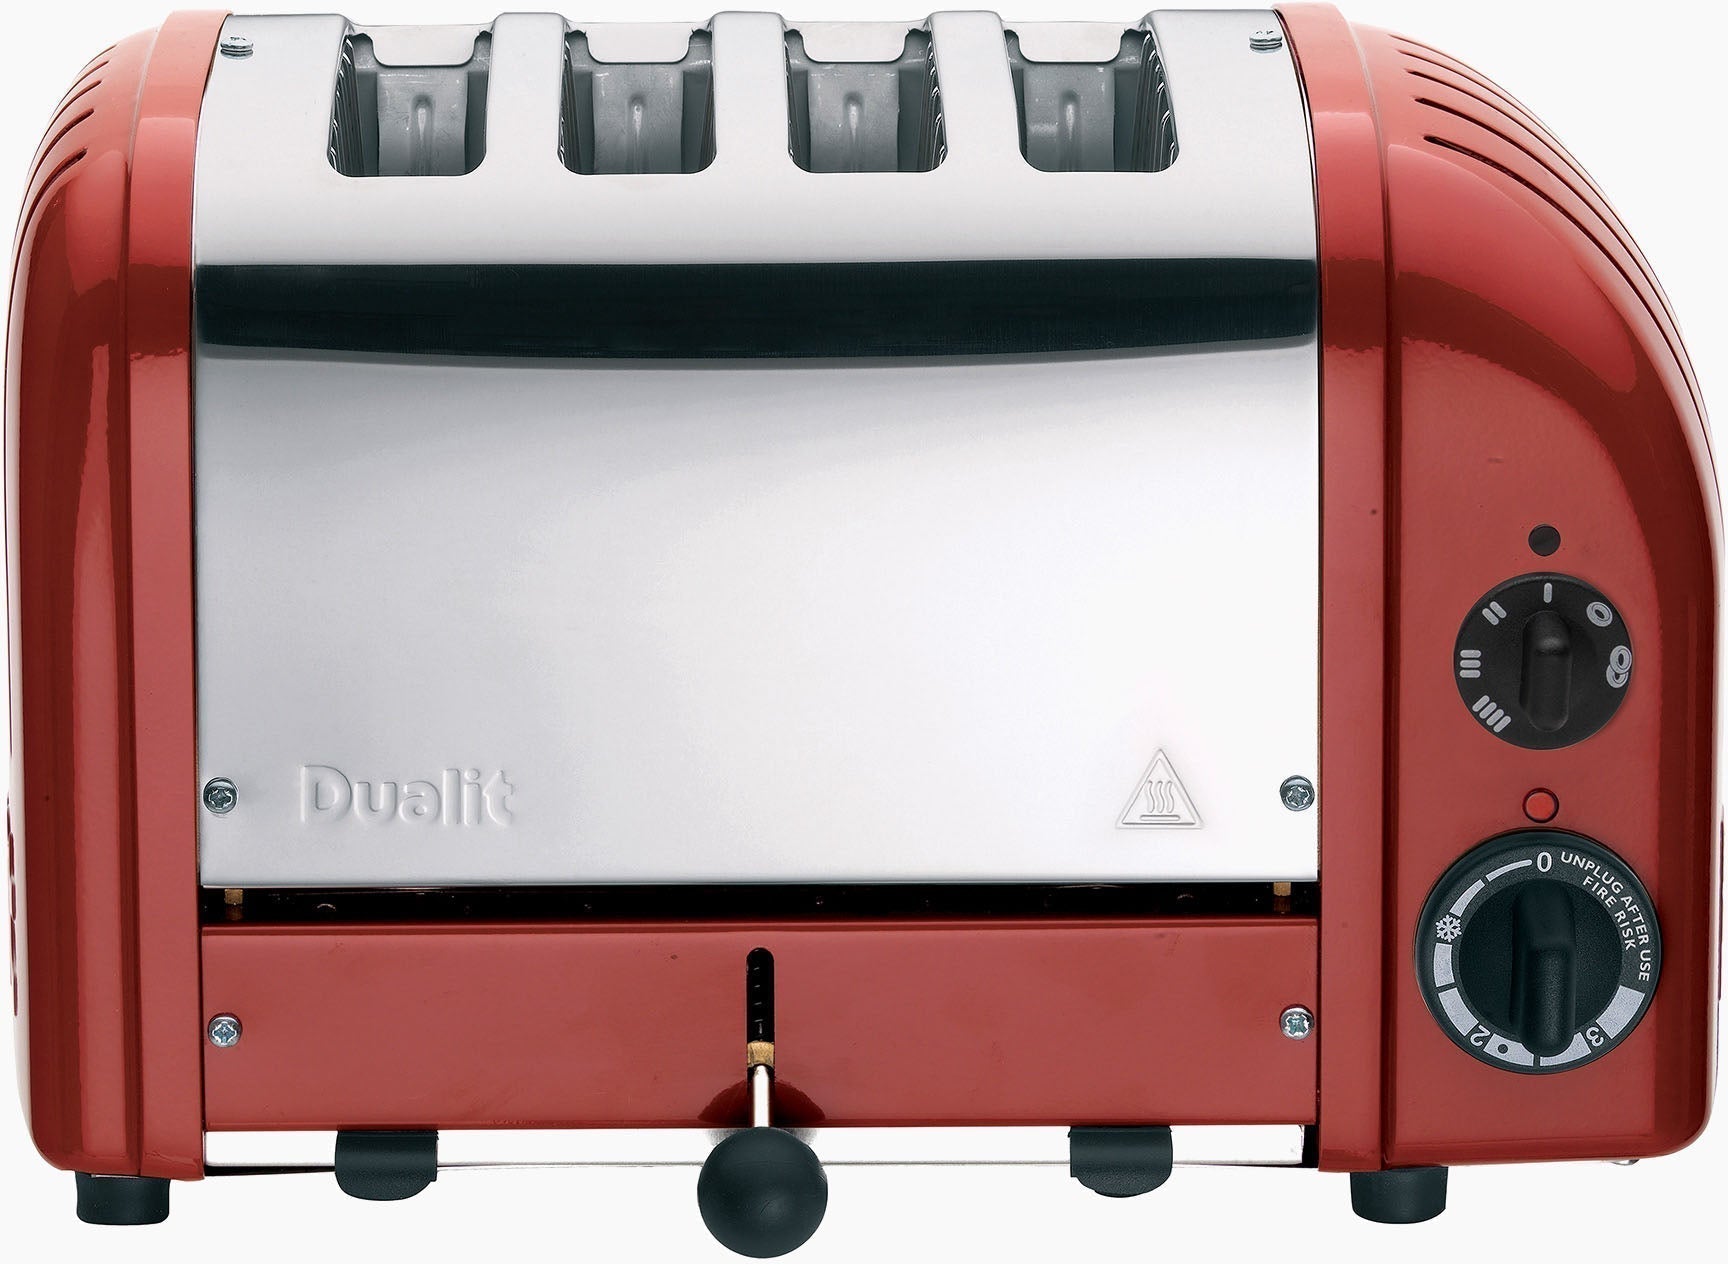 Dualit - NewGen 4 Slice Red Toaster - DU-CTR-4